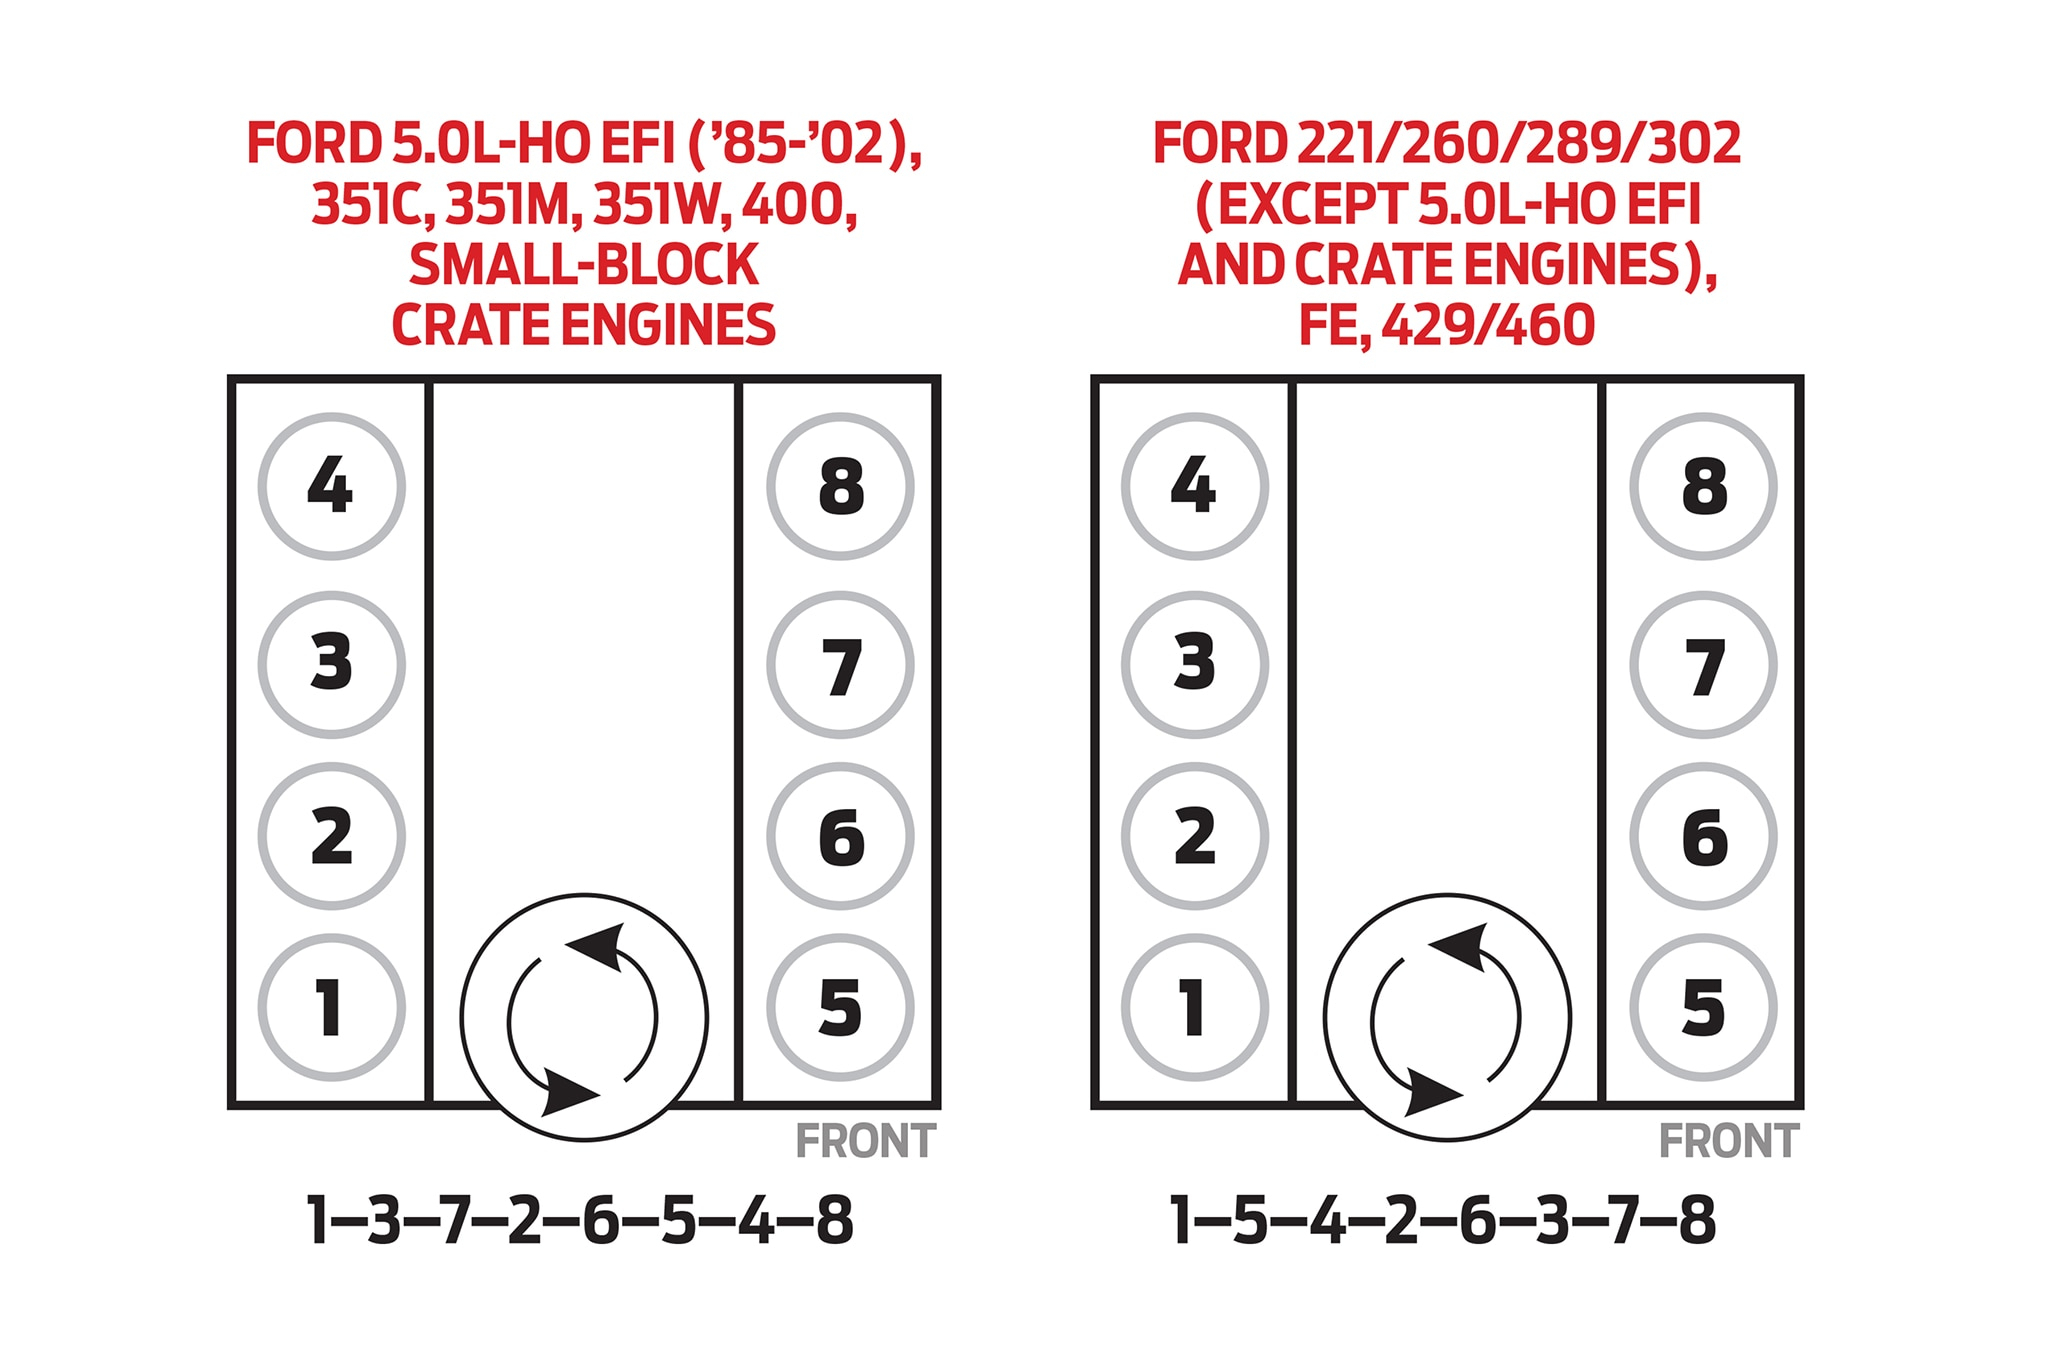 2010 Ford 5.4 Firing Order